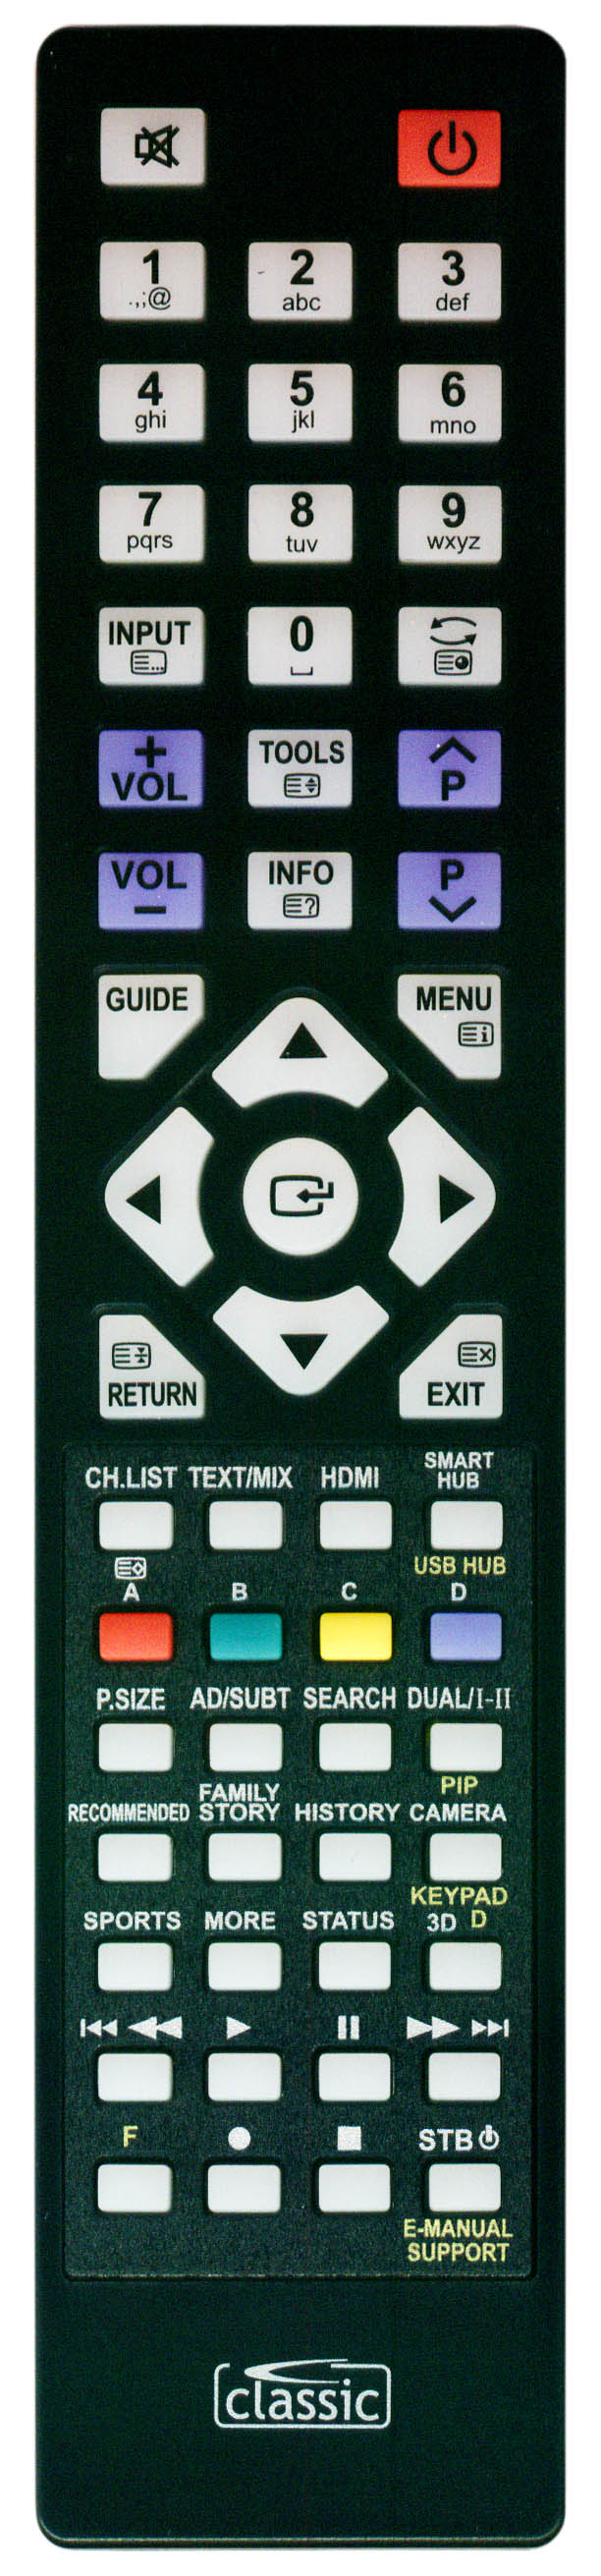 Samsung UE50J5500AWXXH Remote Control